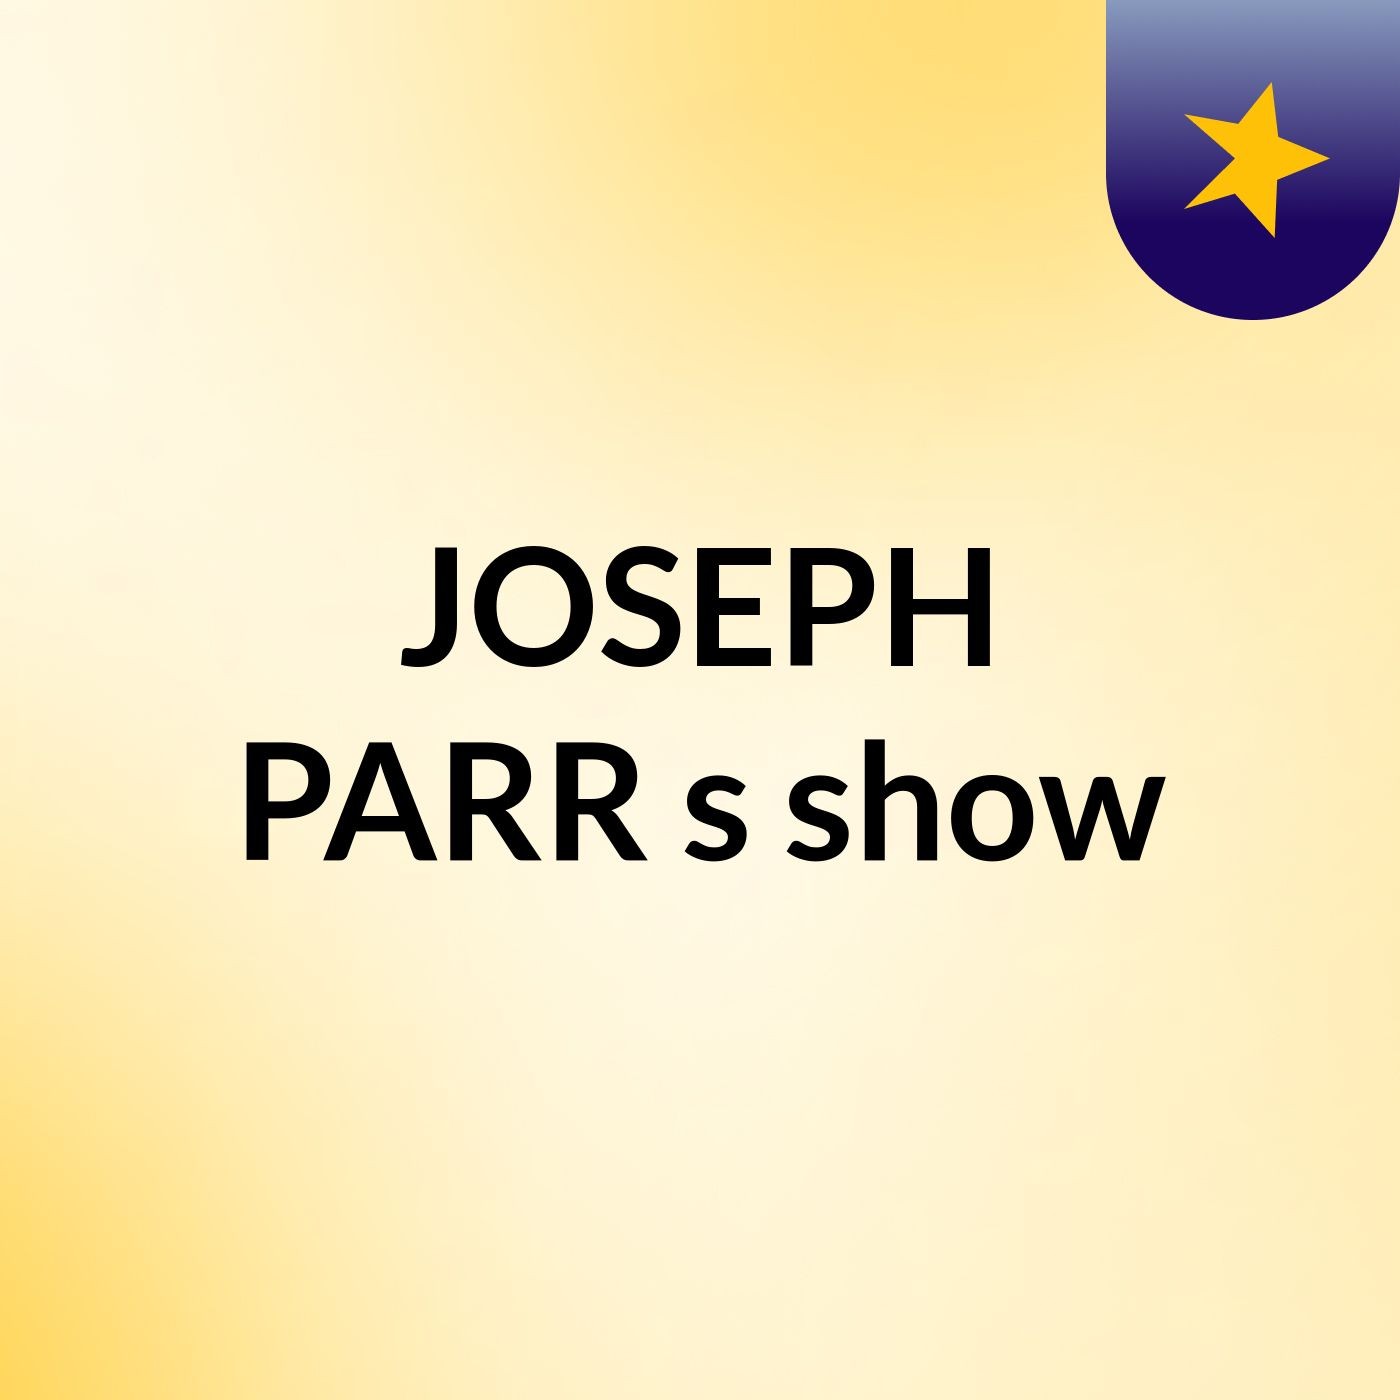 JOSEPH PARR's show